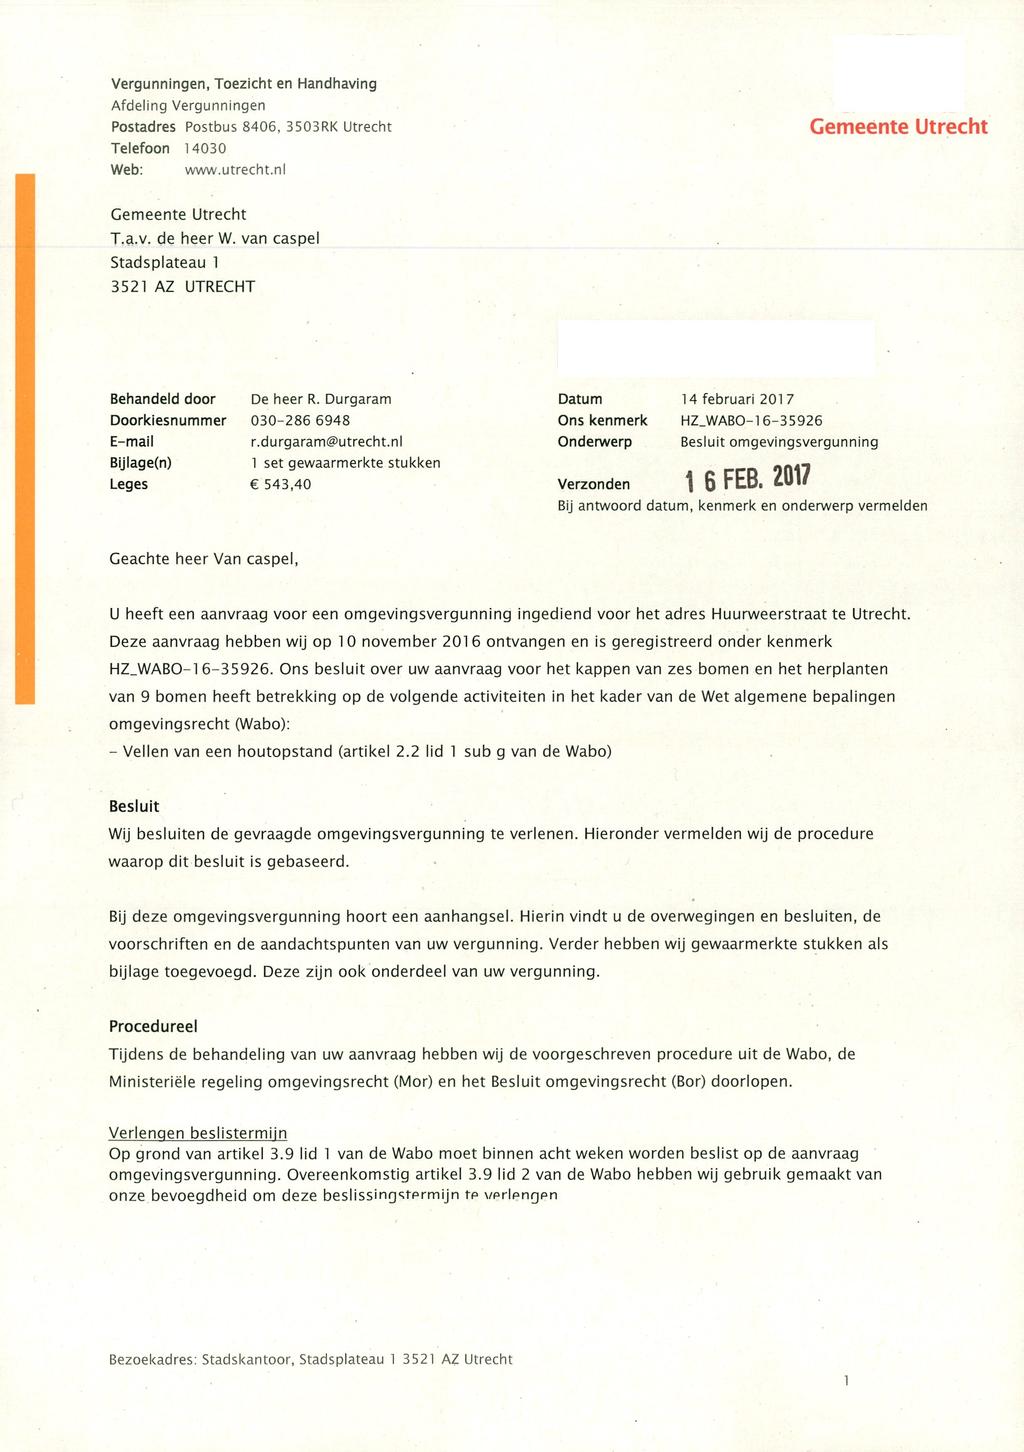 Vergunningen, Toezicht en Handhaving Postadres Postbus 8406, 3503RK Utrecht Telefoon 14030 Web: www.utrecht.nl T.a.v. de heer W.